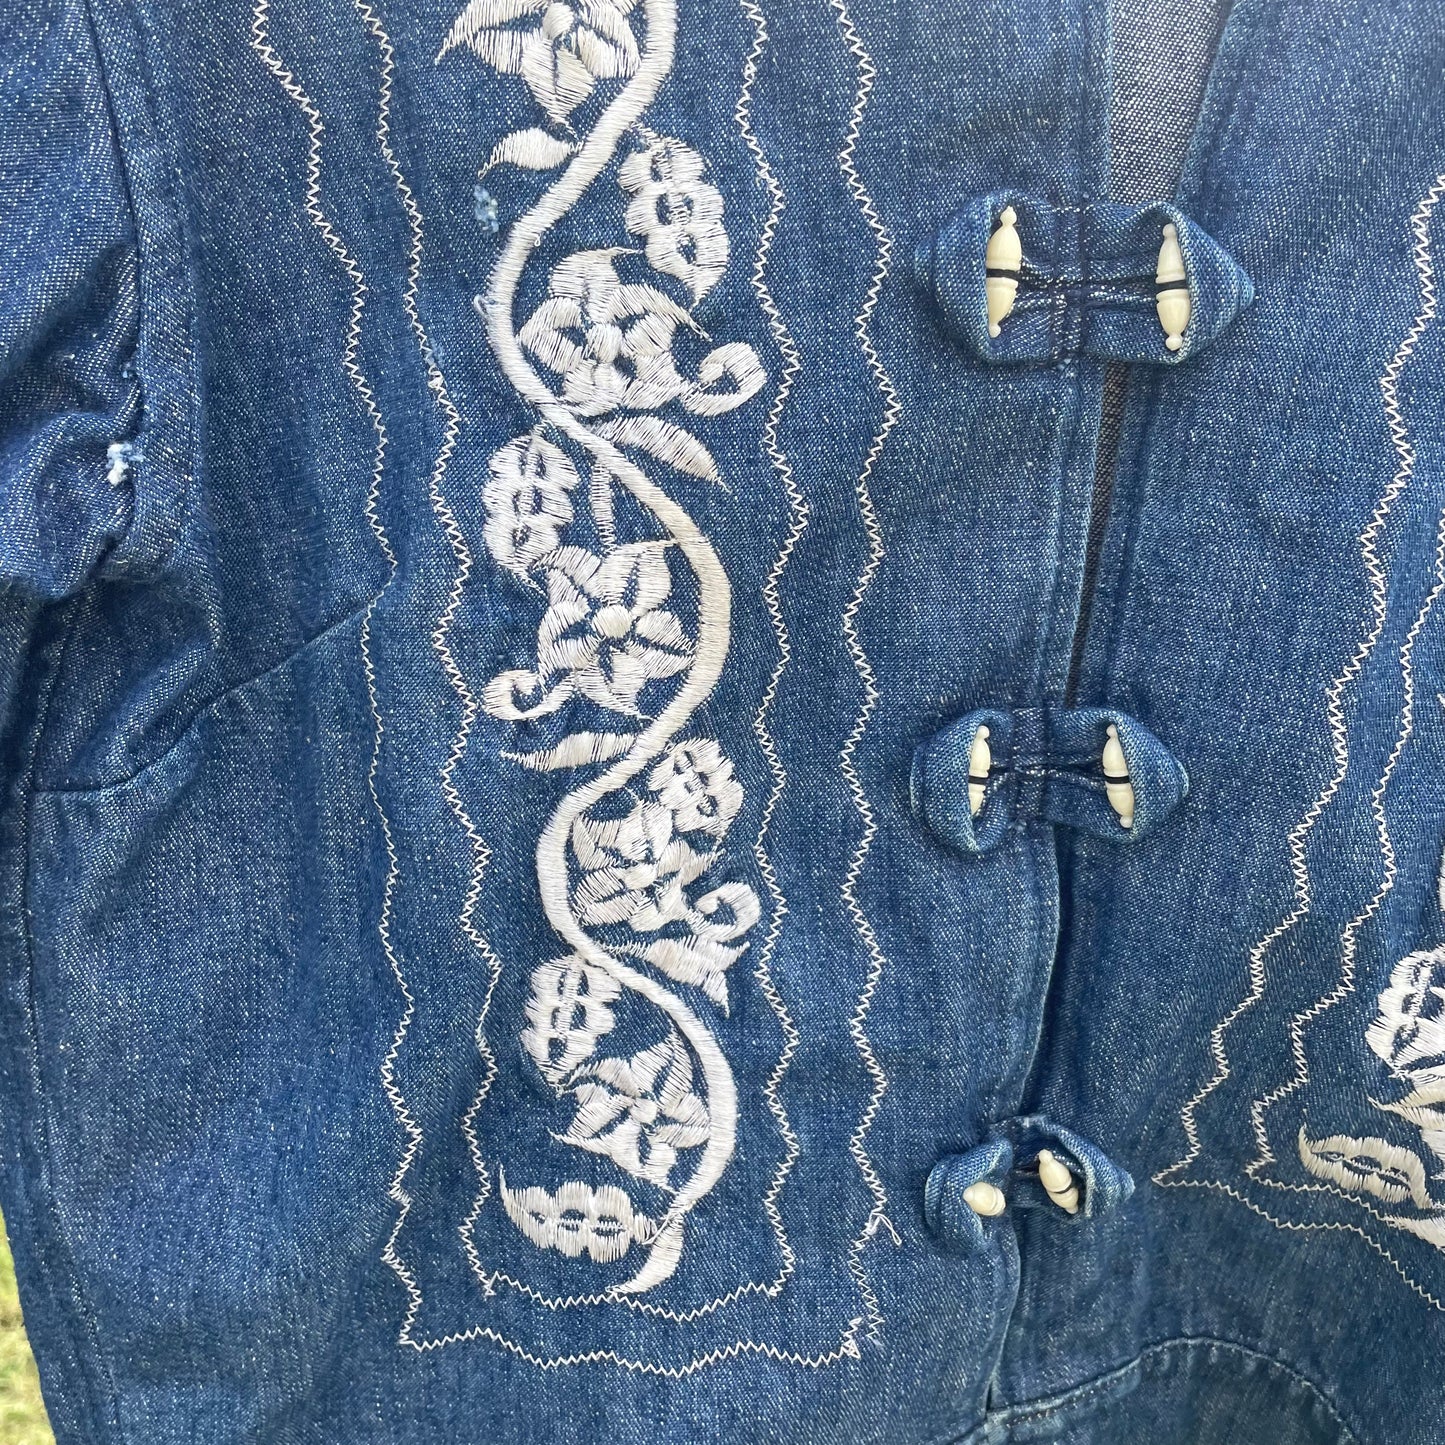 VTG Floral Embroidered Denim Jacket